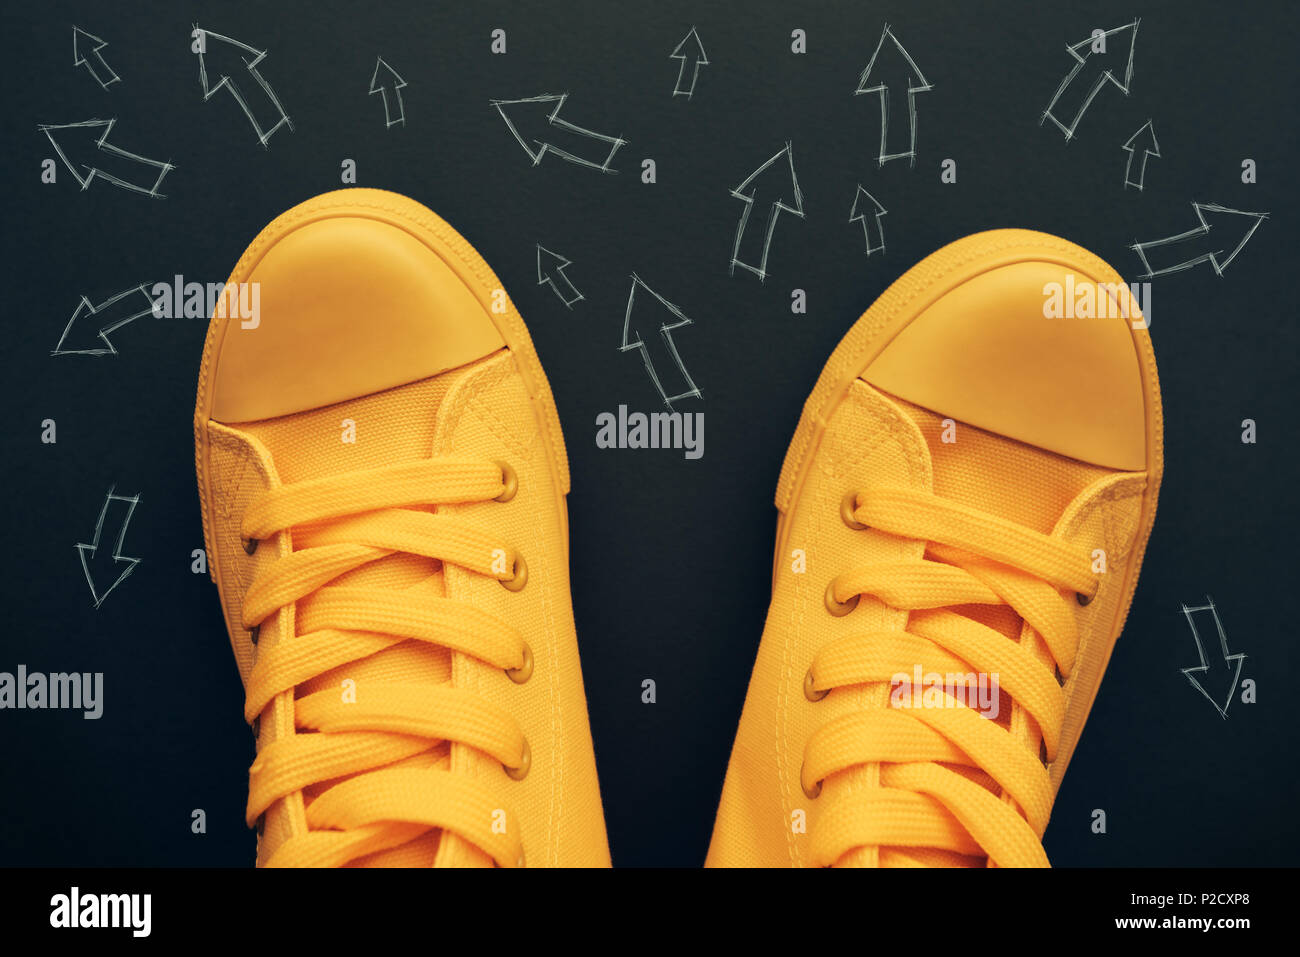 La toma de decisiones y elecciones correctas imagen conceptual con amarillo zapatillas sobre la carretera con pequeñas huellas de flecha apuntando a diferentes direcciones Foto de stock